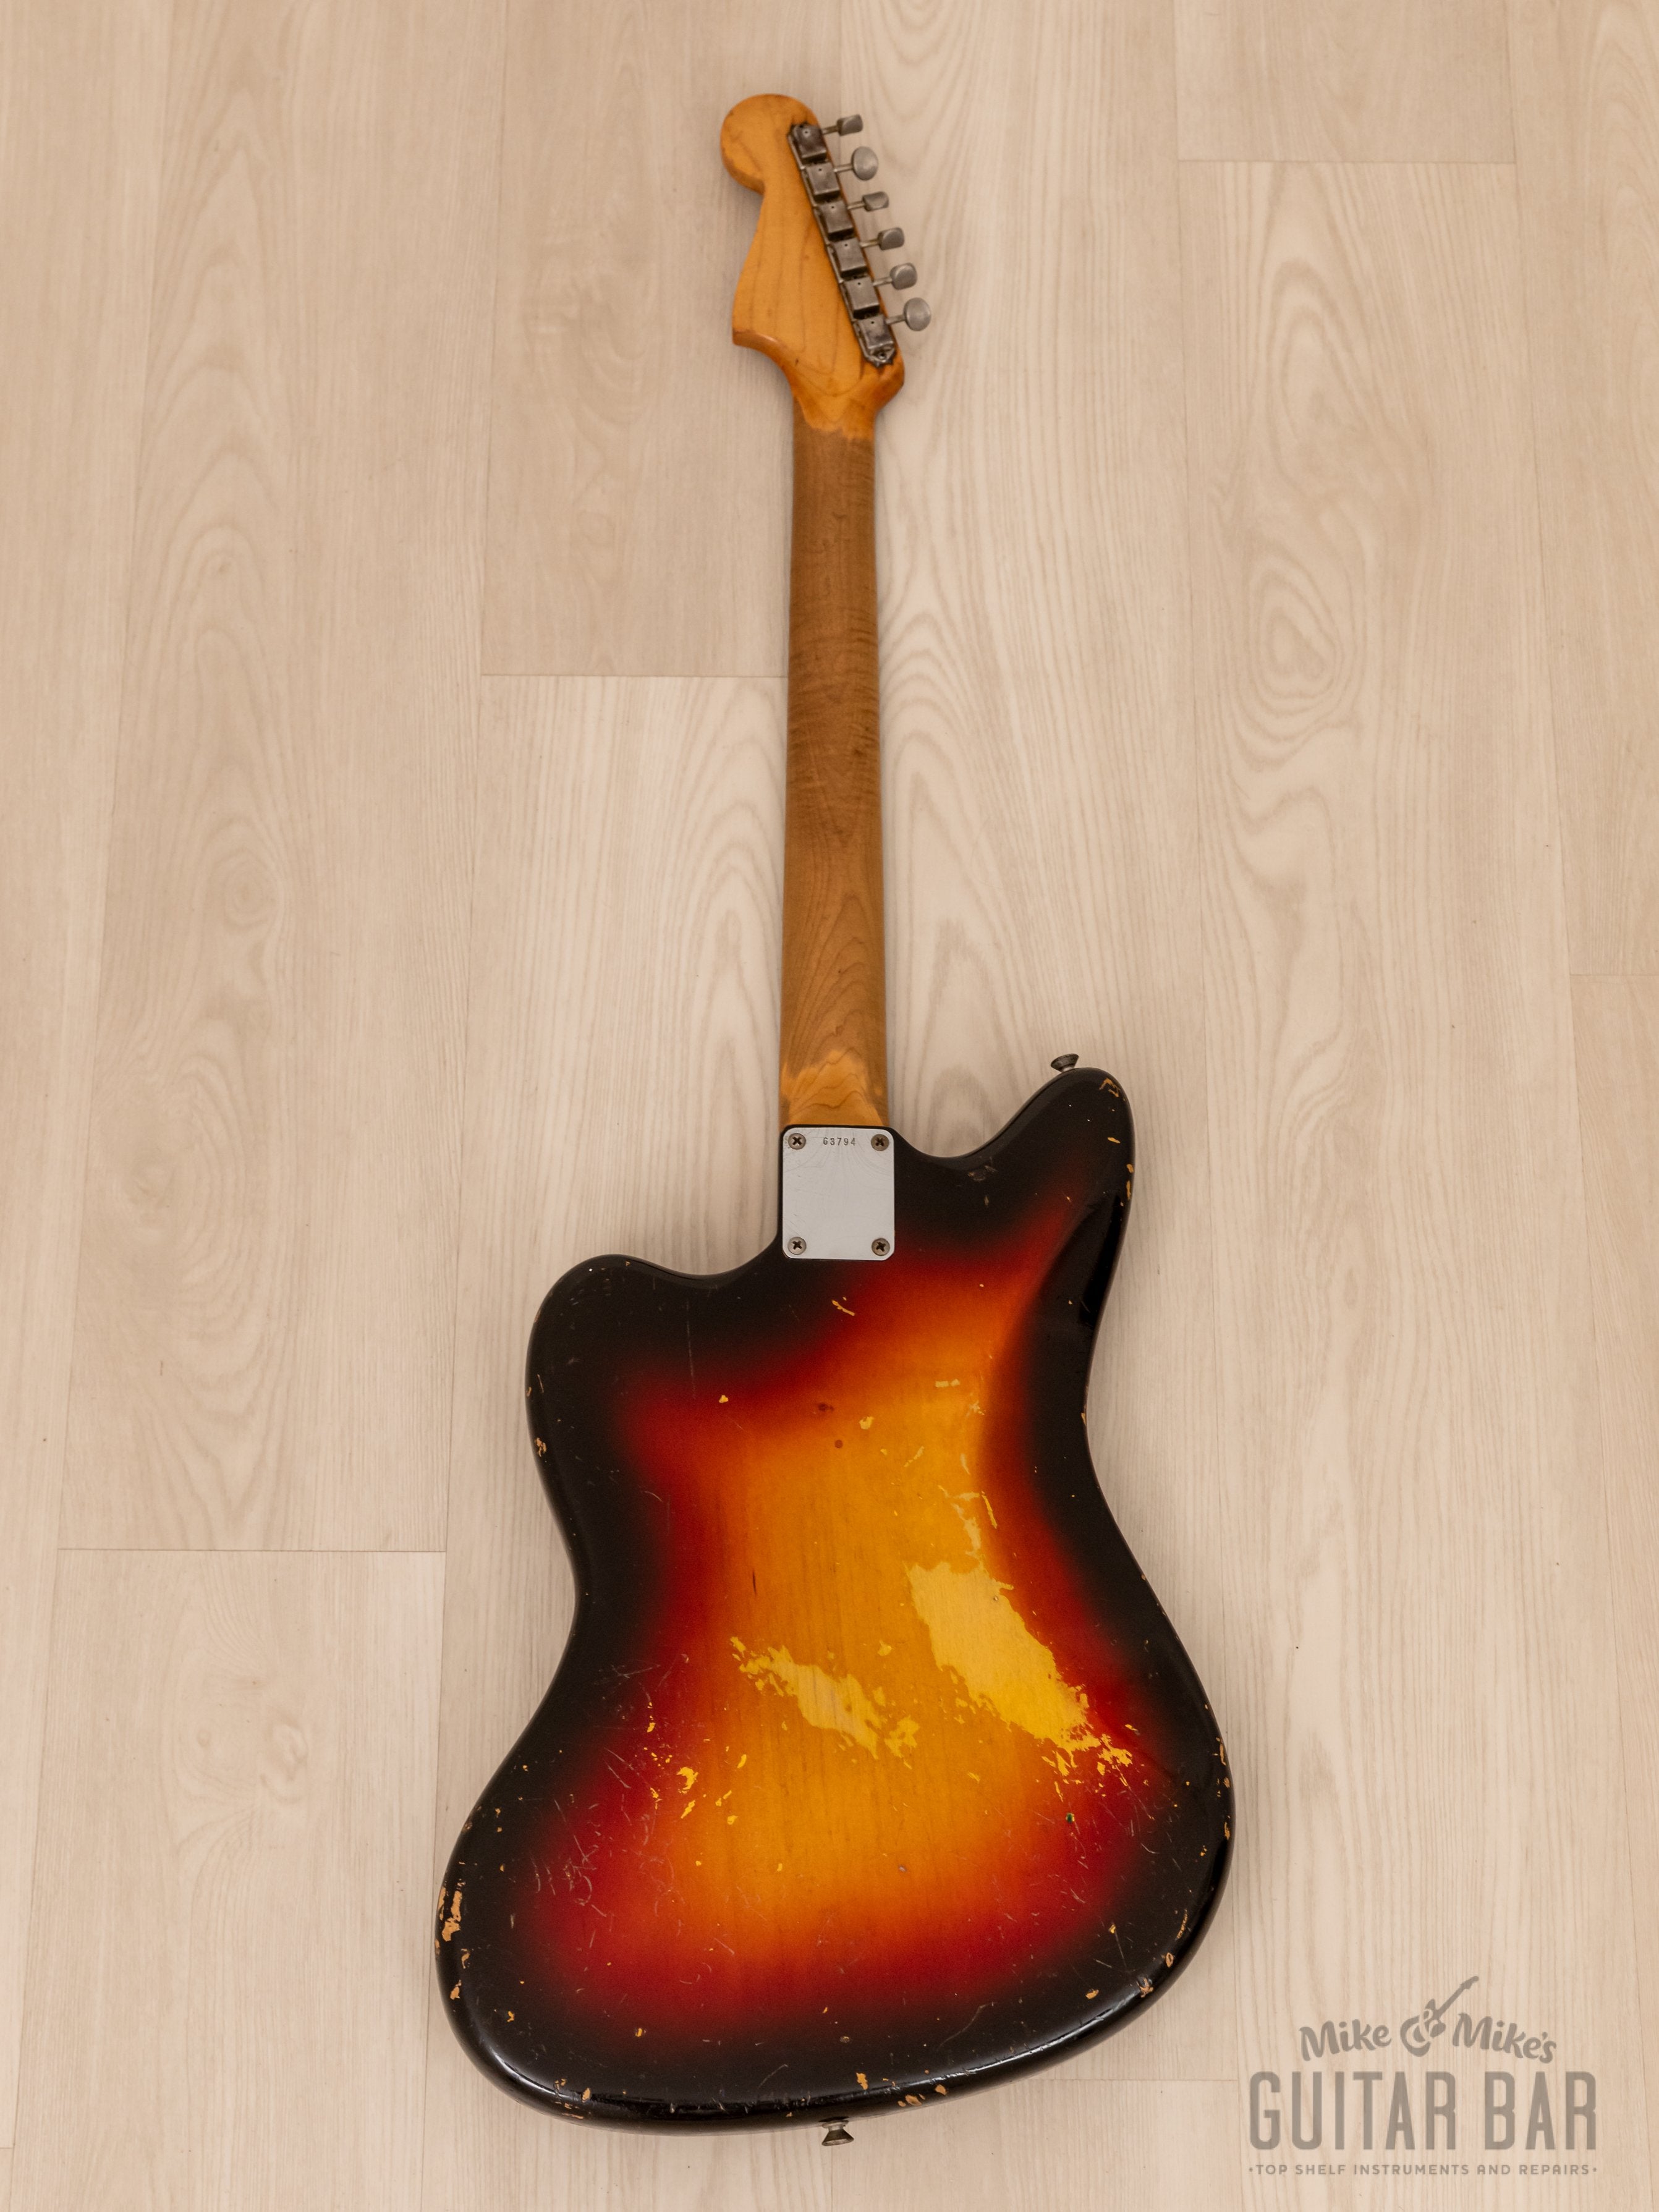 1961 Fender Jazzmaster Pre-CBS Vintage Offset Guitar Sunburst 100% Original w/ Case